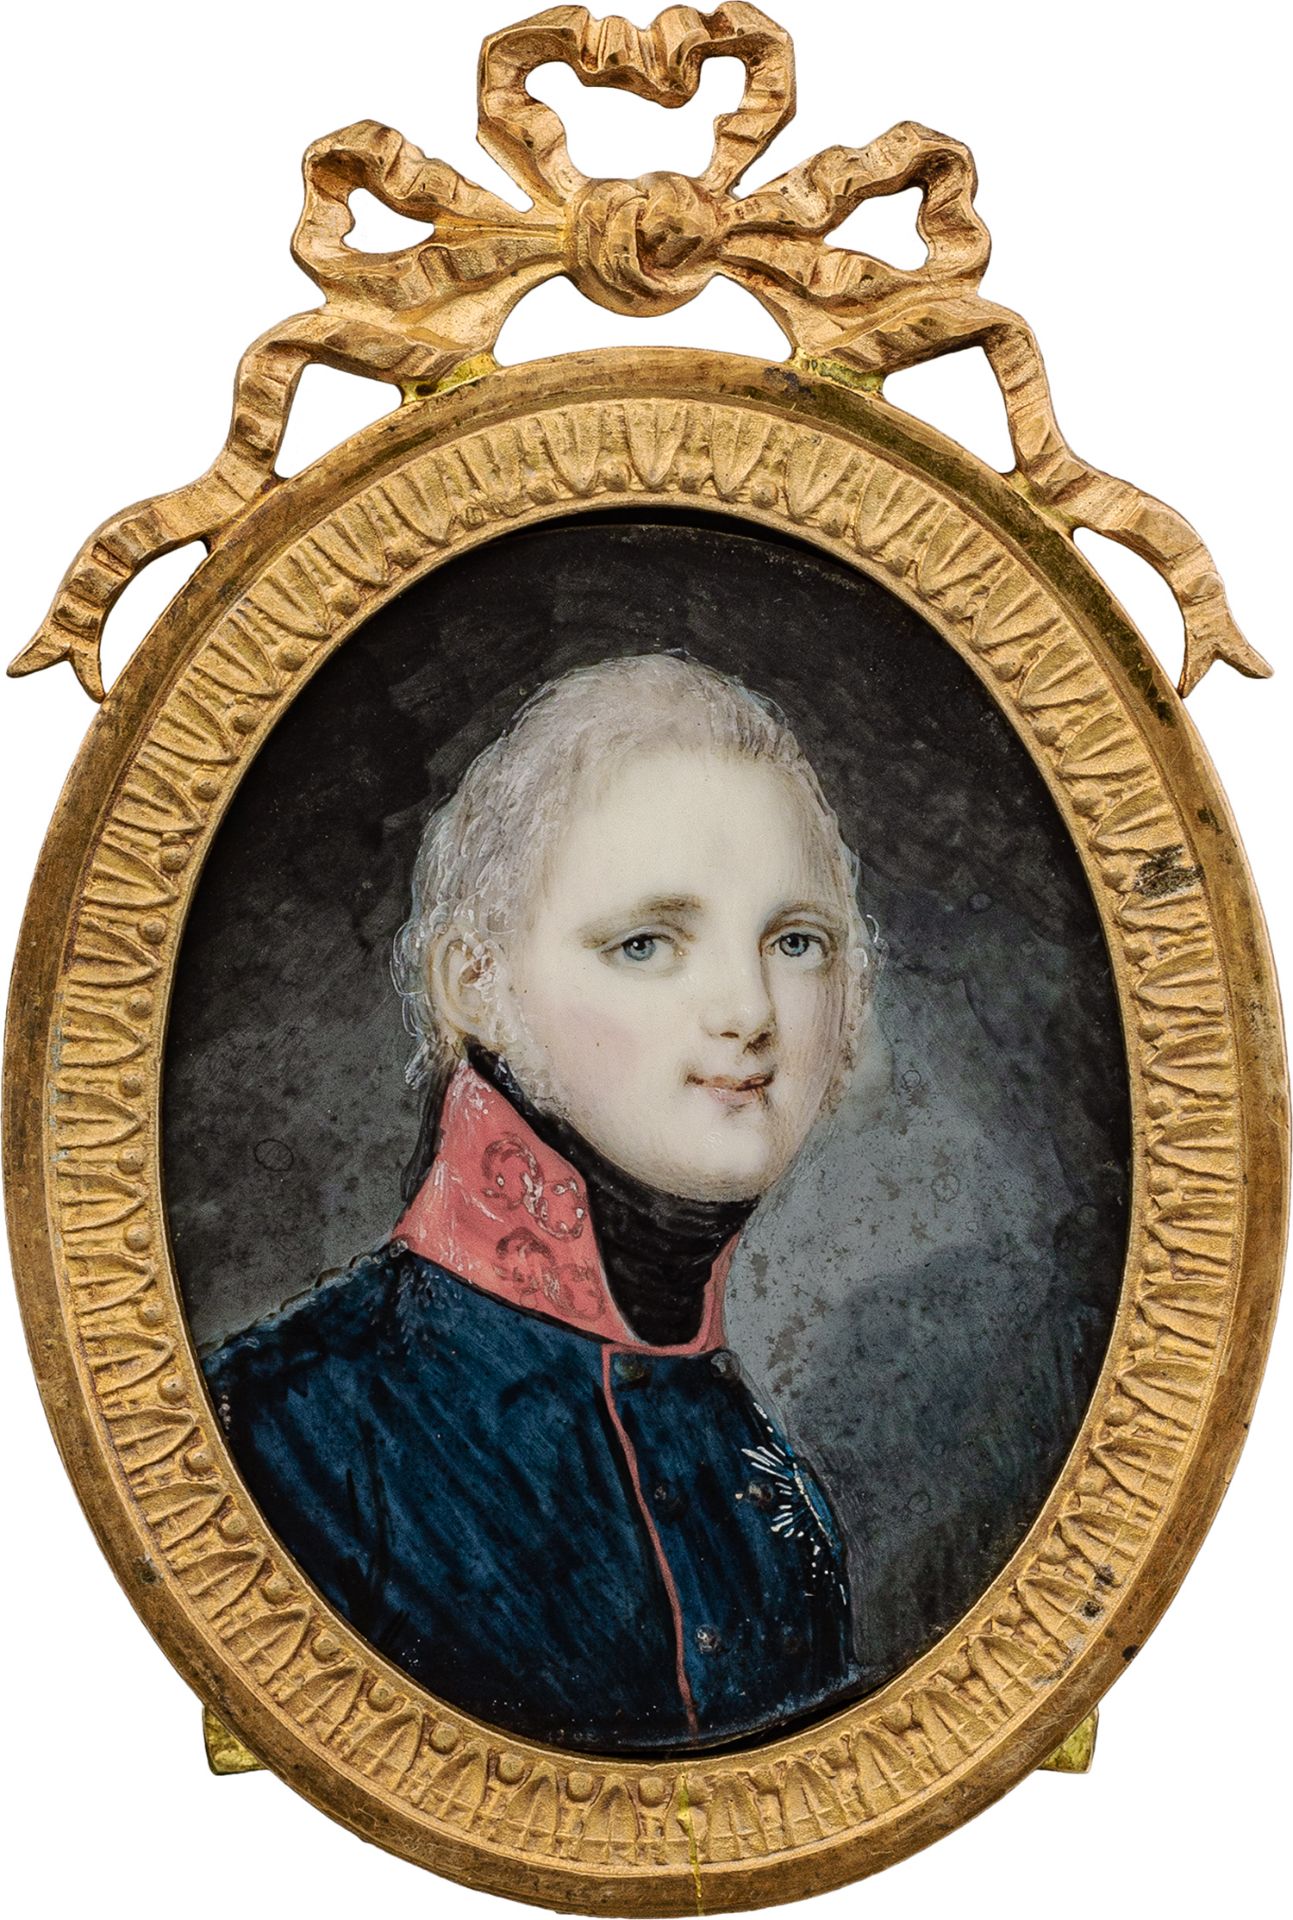 von Kügelgen, Gerhard: Miniatur Portrait des Zaren Alexander I. von Russland in blauer Uniform m